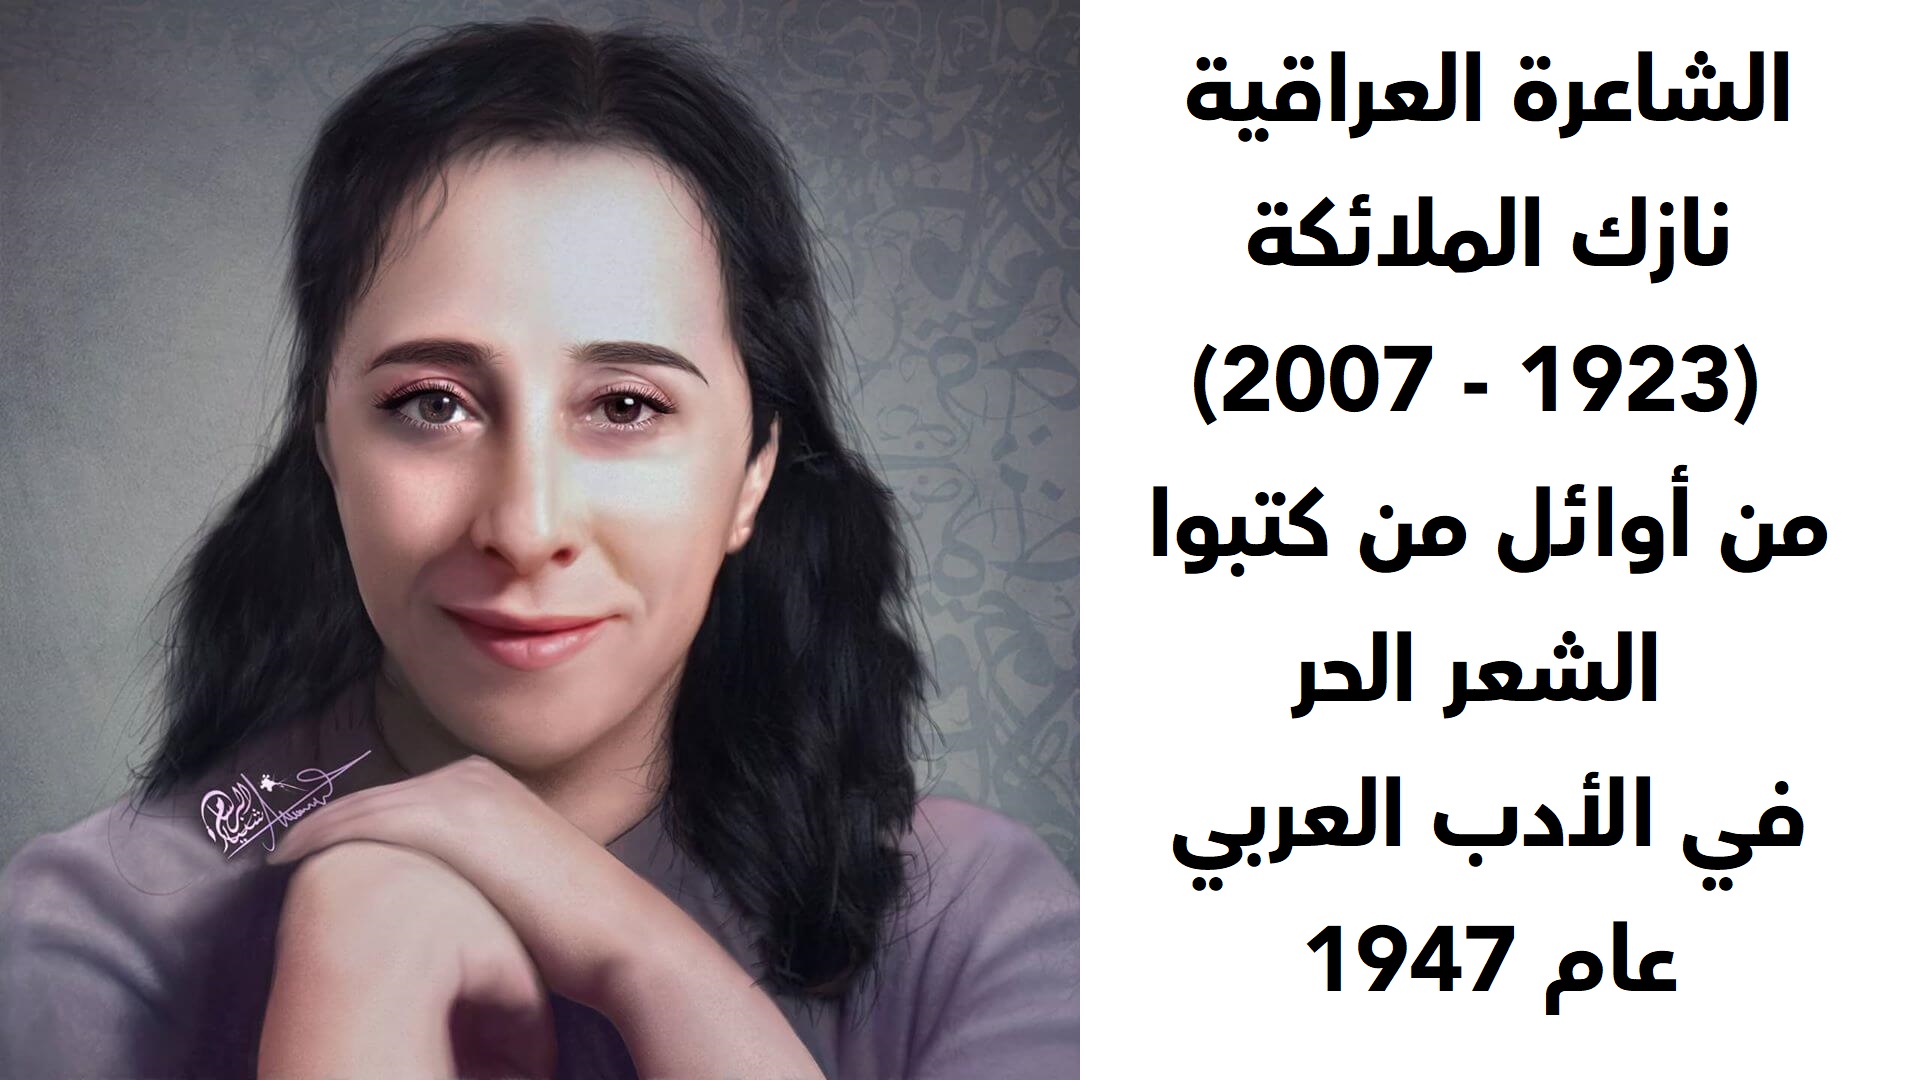  الشاعرة العراقية نازك الملائكة  (1923 - 2007)  من أوائل من كتبوا الشعر الحر في الأدب العربي عام 1947 - لوحة فنية. الرسام شَنيار.